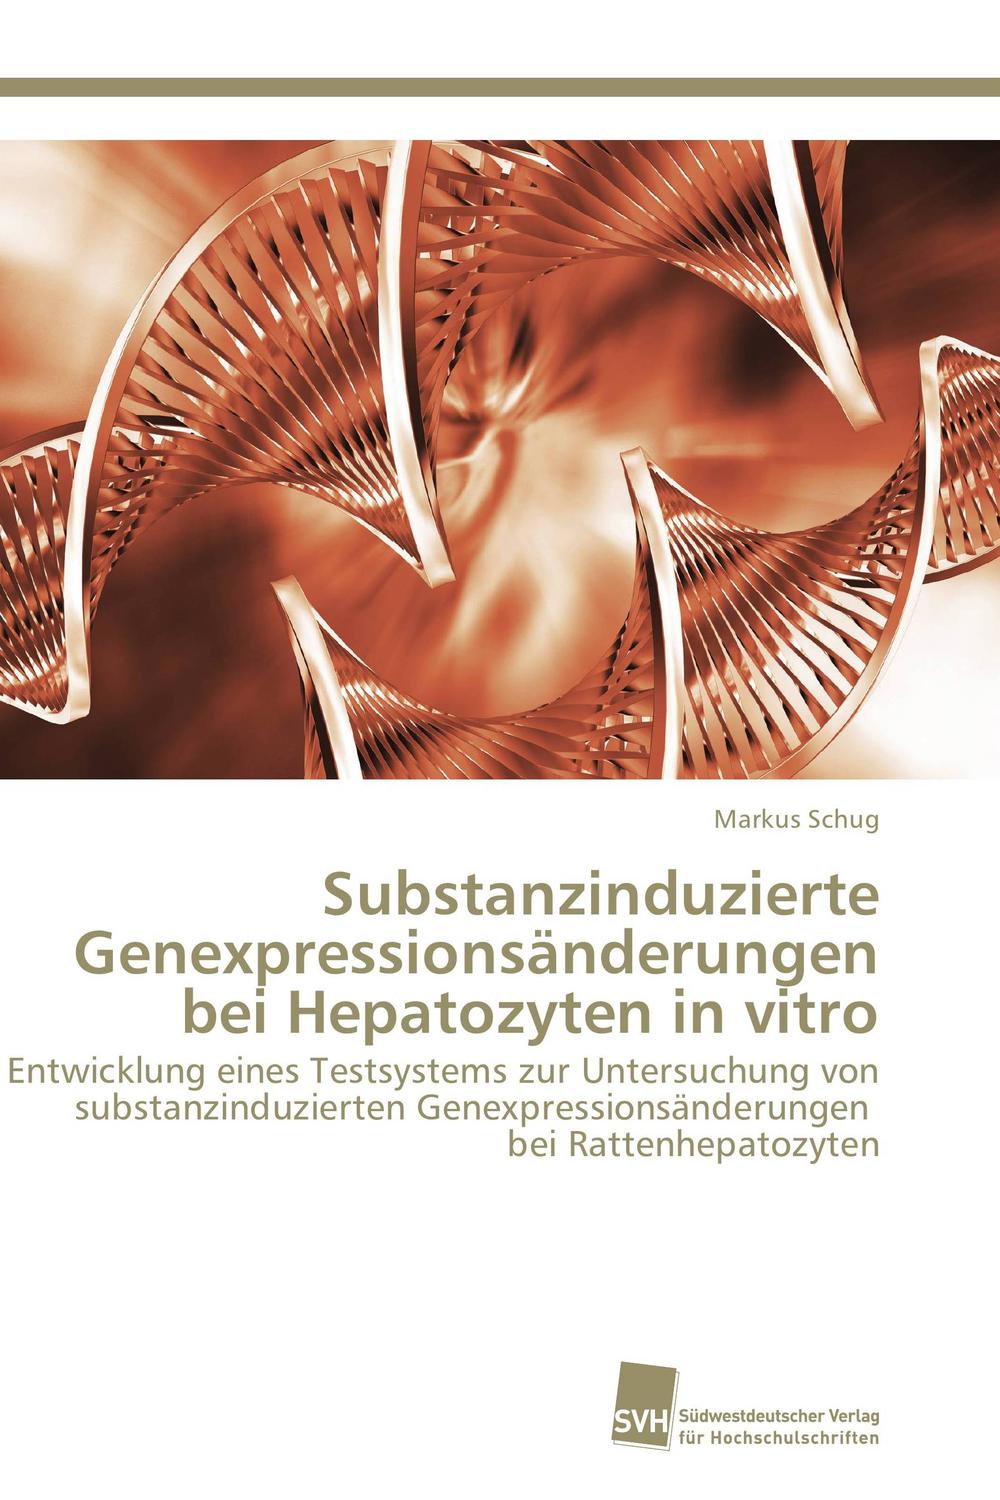 Substanzinduzierte Genexpressionsänderungen bei Hepatozyten in vitro - Markus Schug